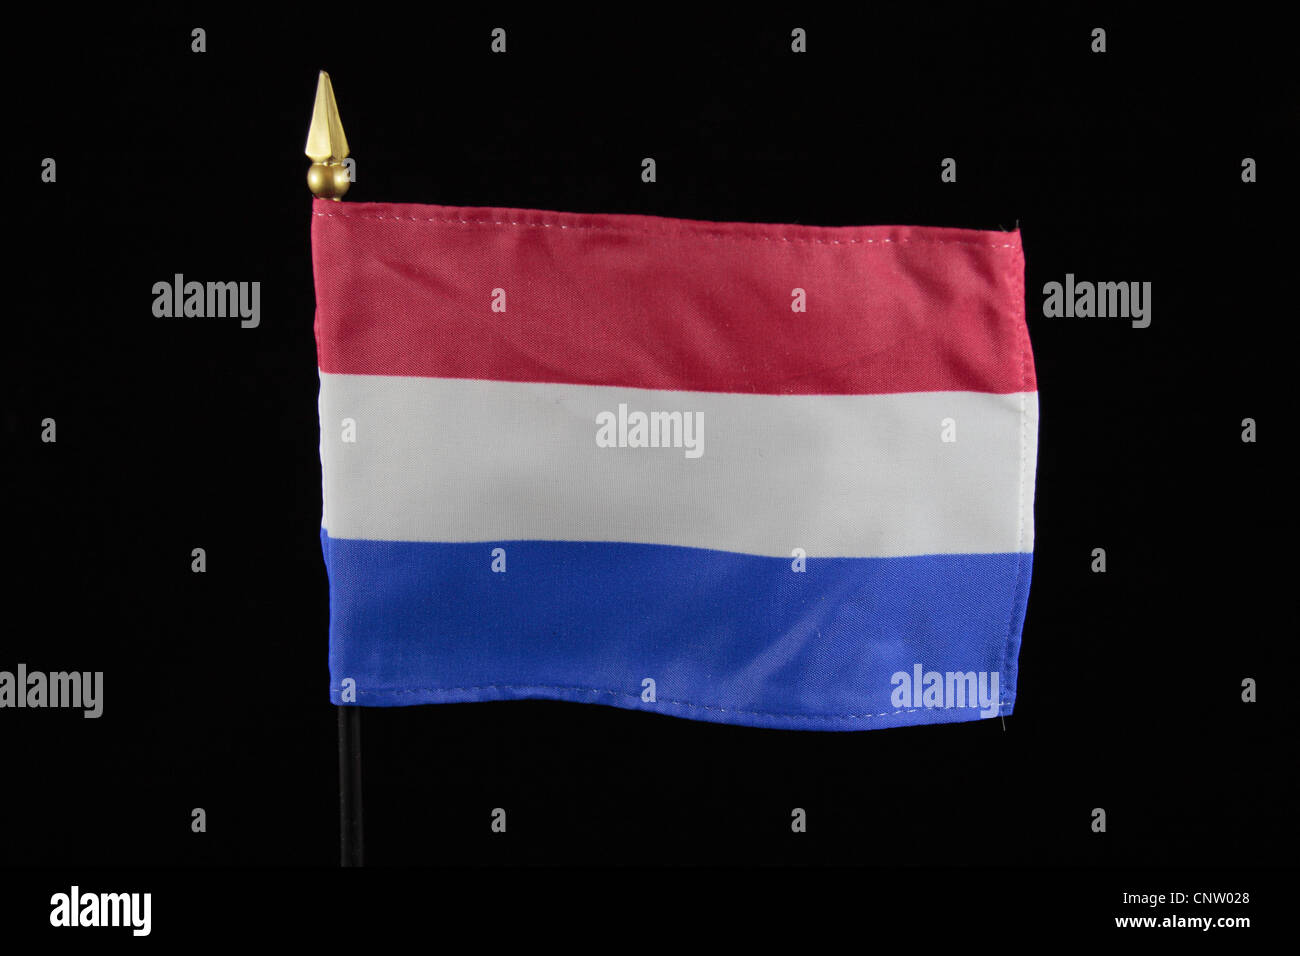 Le drapeau national du Royaume des Pays-Bas sur un fond noir. Banque D'Images